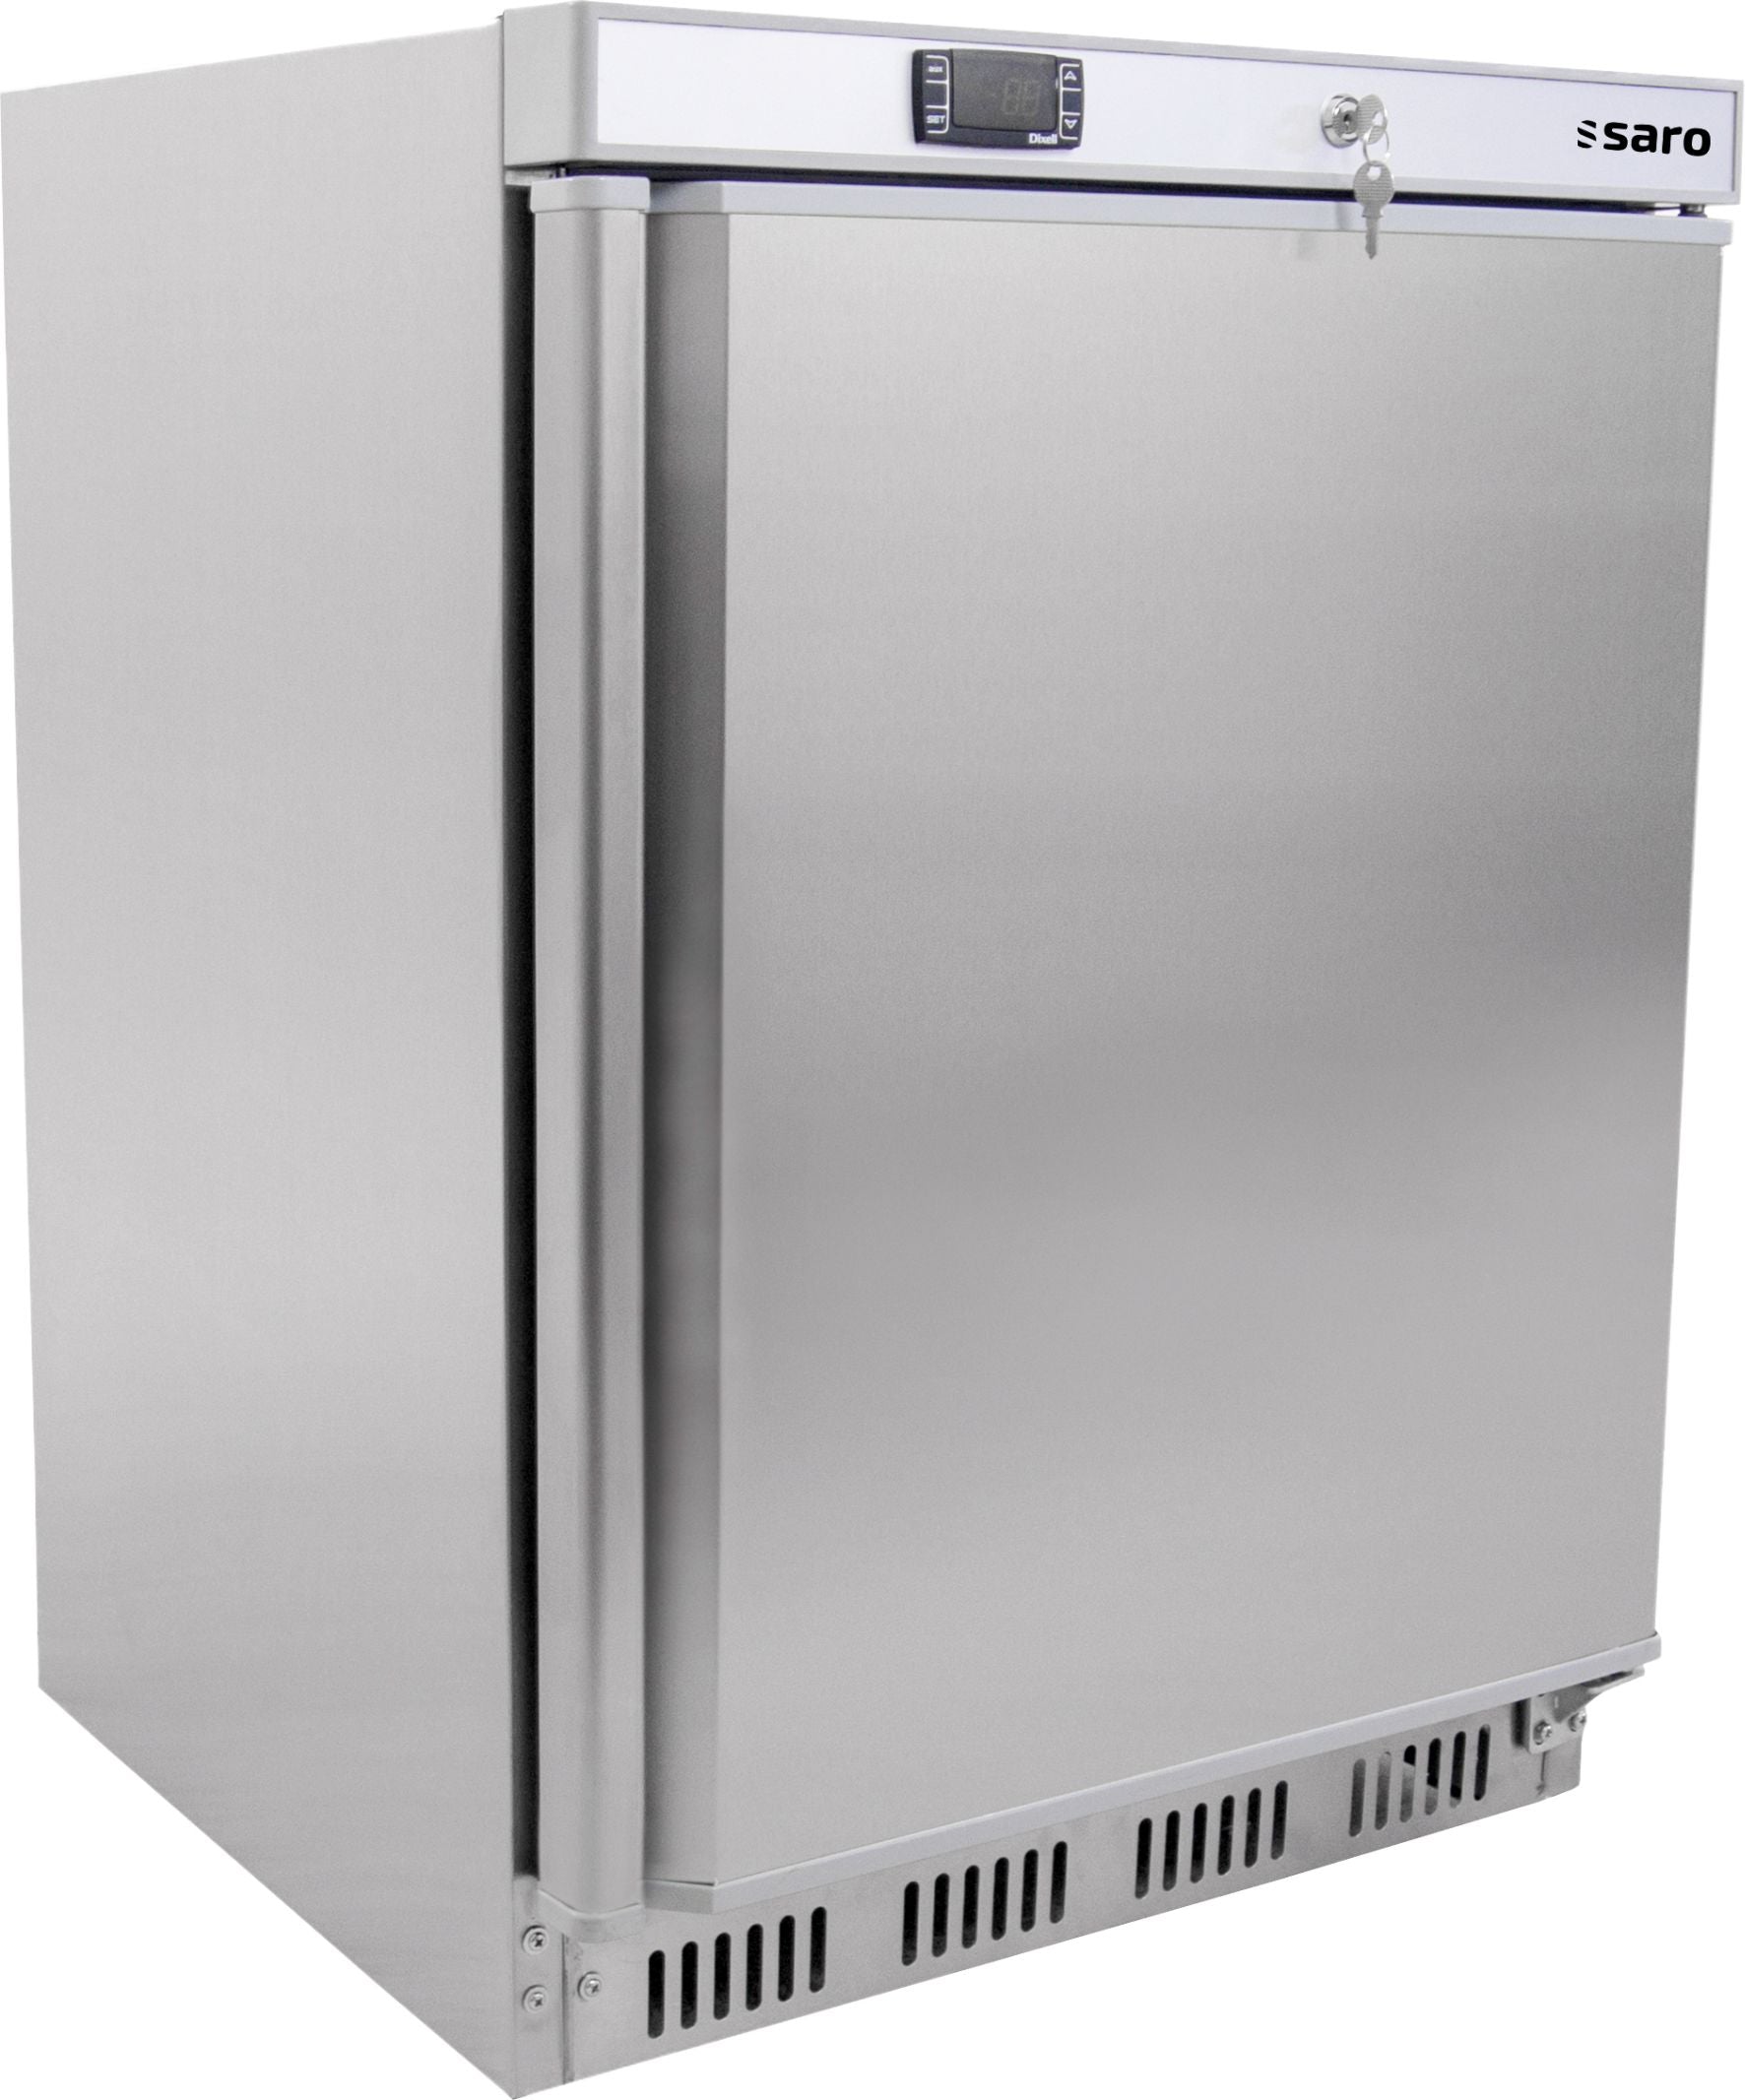 SARO Opbevaringskøleskab - rustfrit stål, model HK 200 S/S